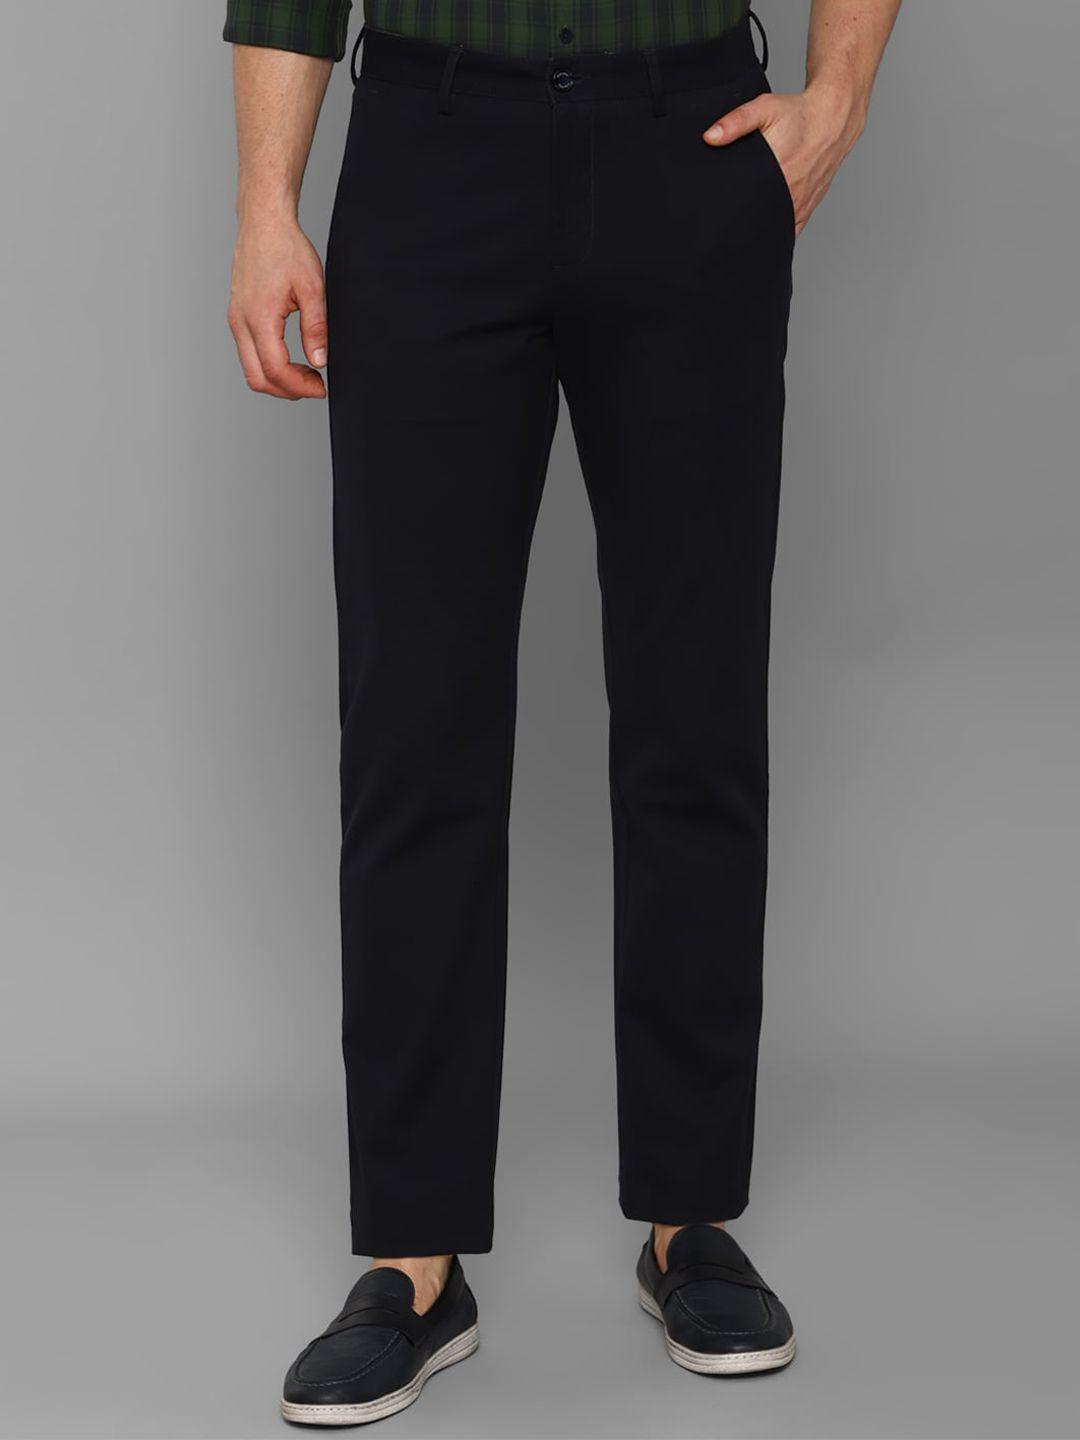 allen-solly-men-black-trousers